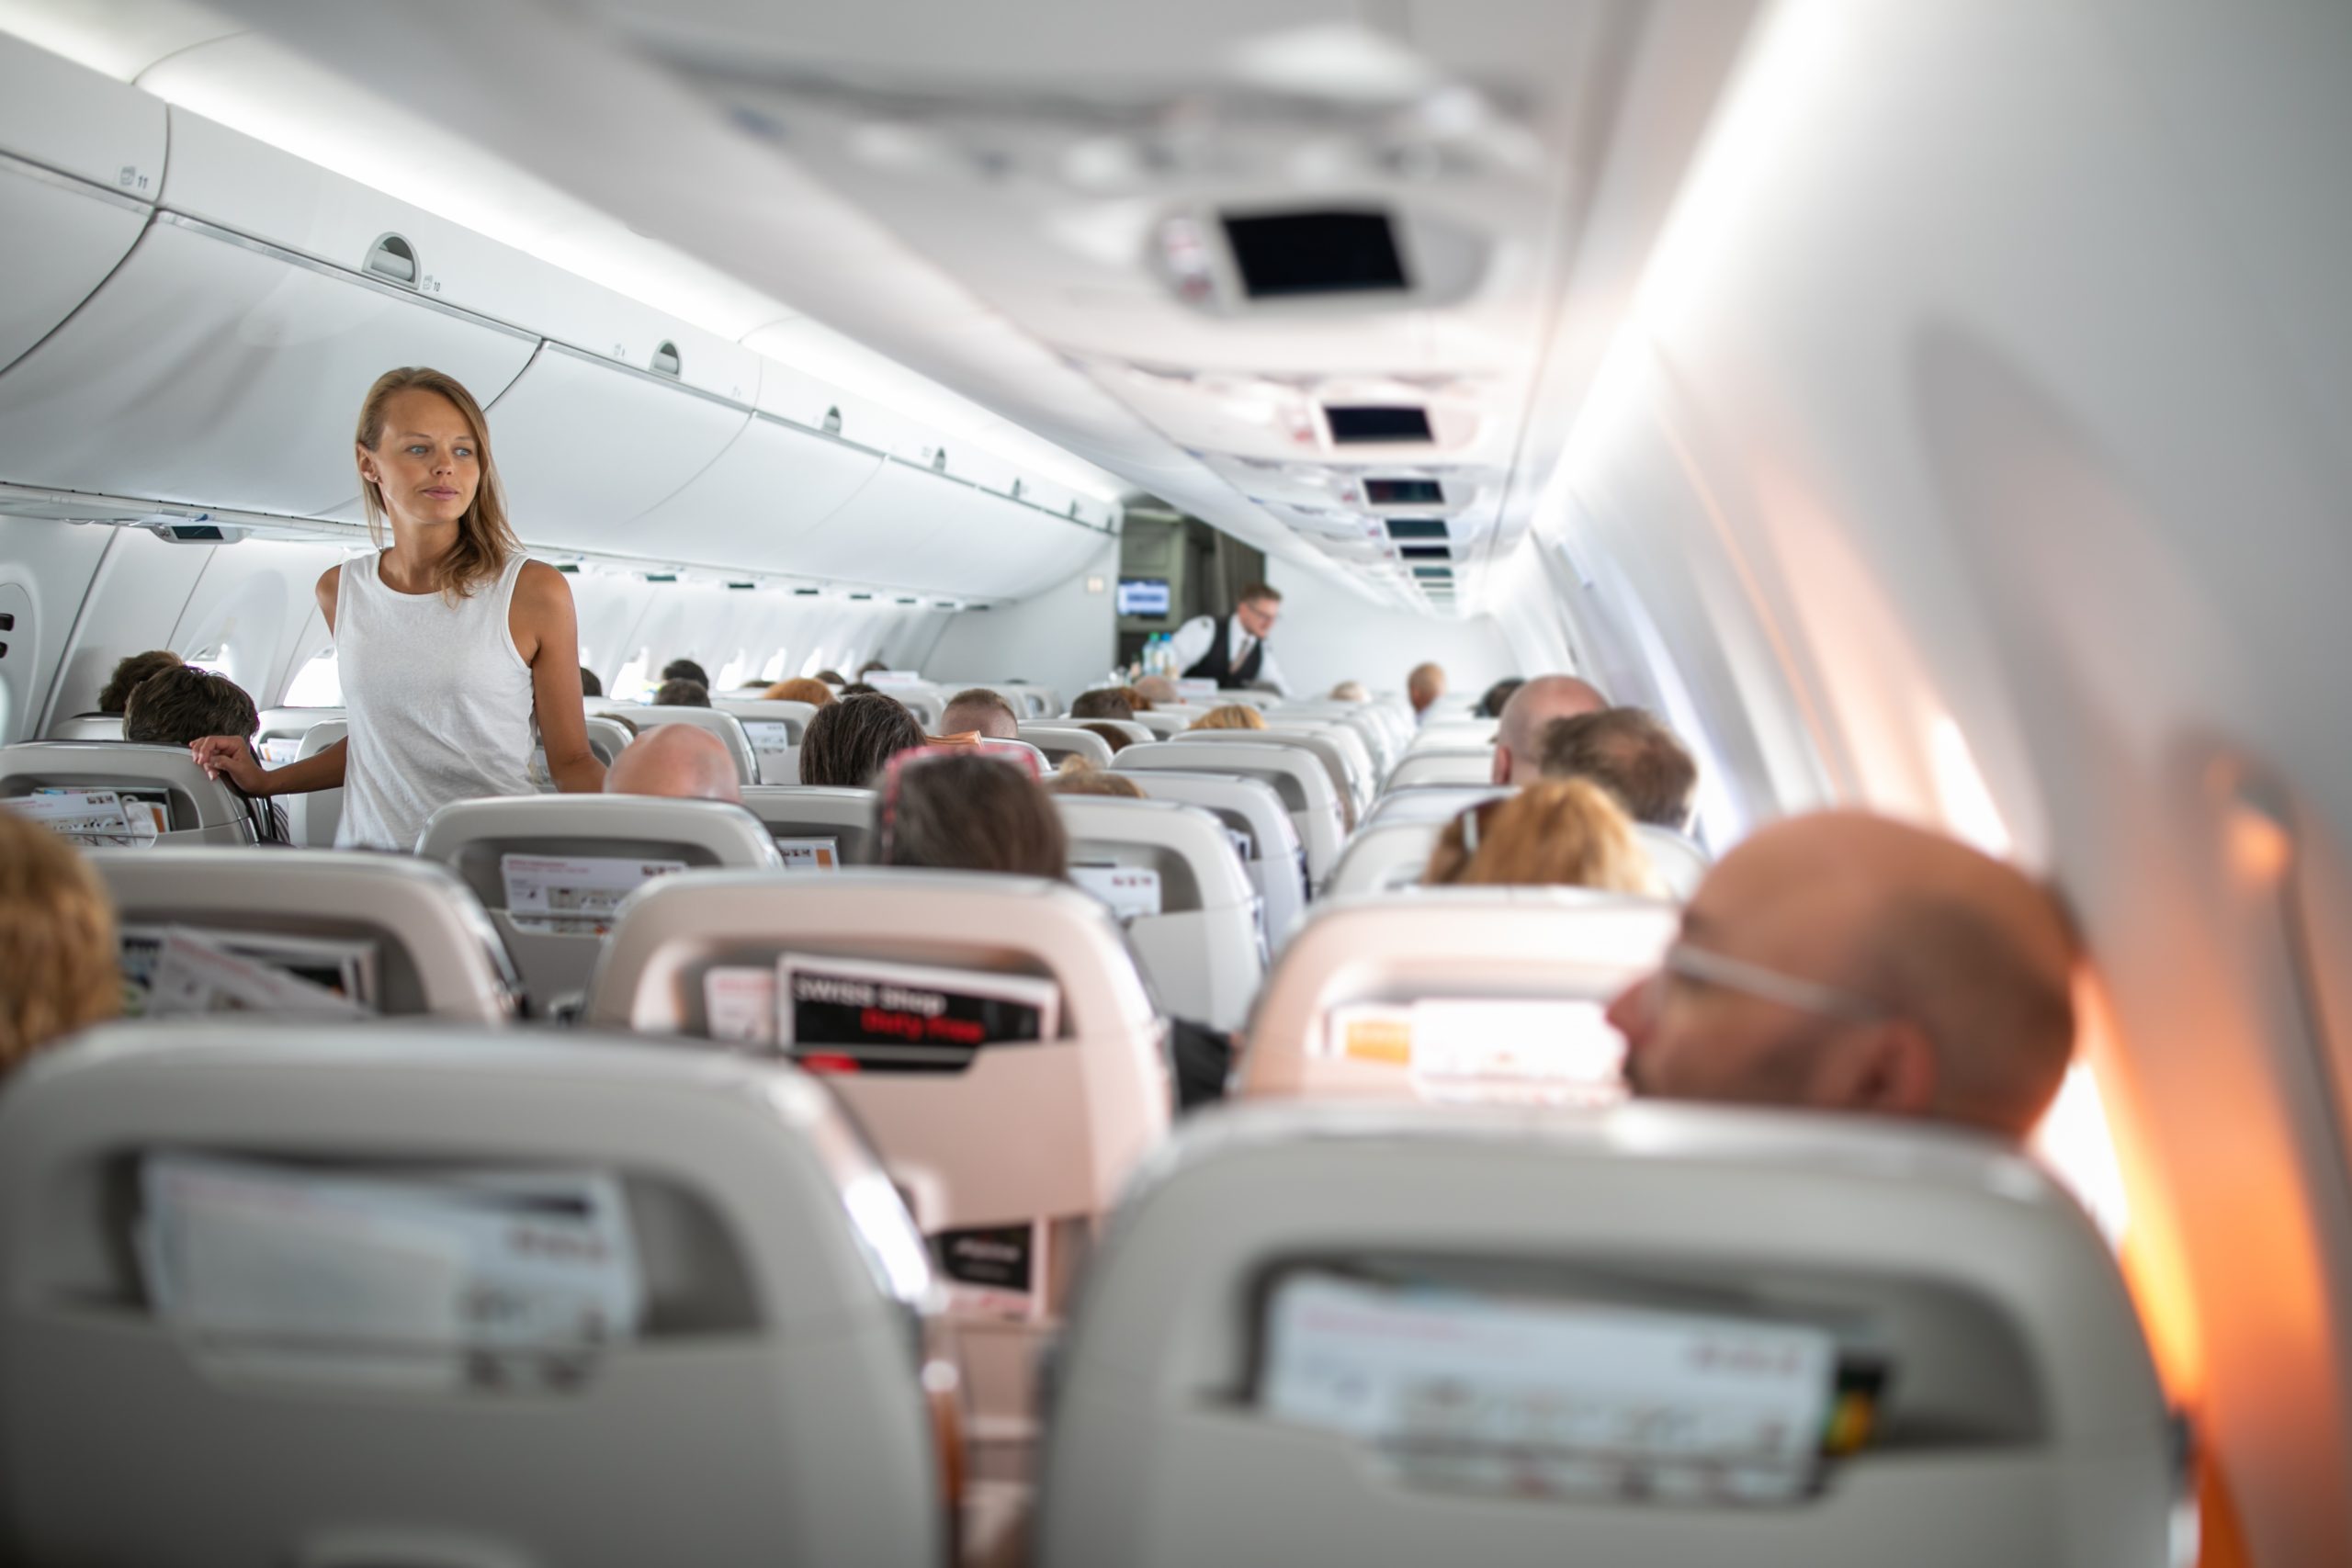 na pokładzie samolot, fot. l i g h t p o e t, Shutterstock